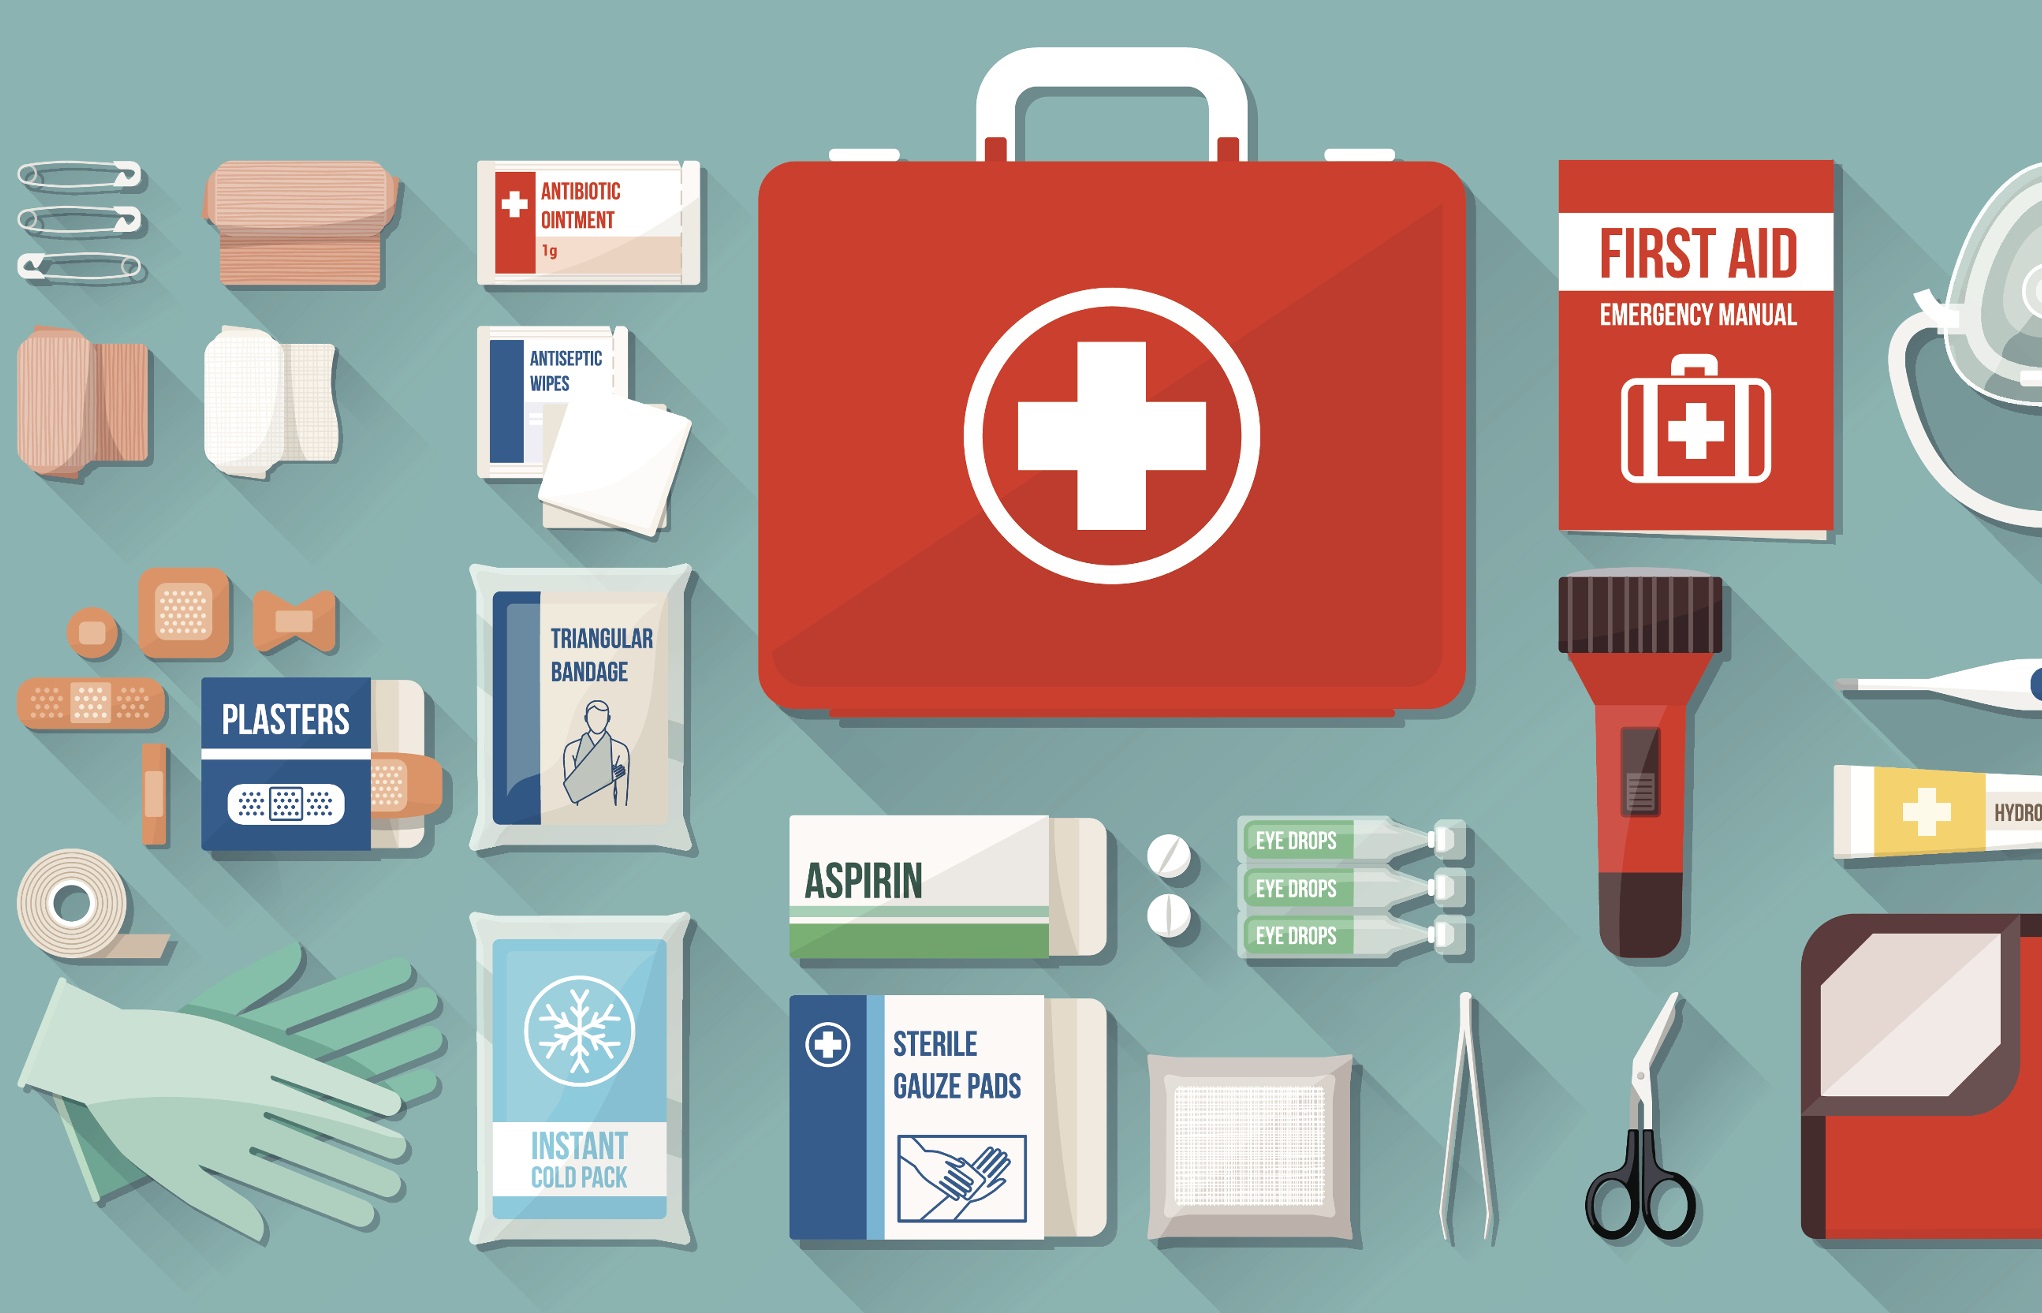 basic first aid list